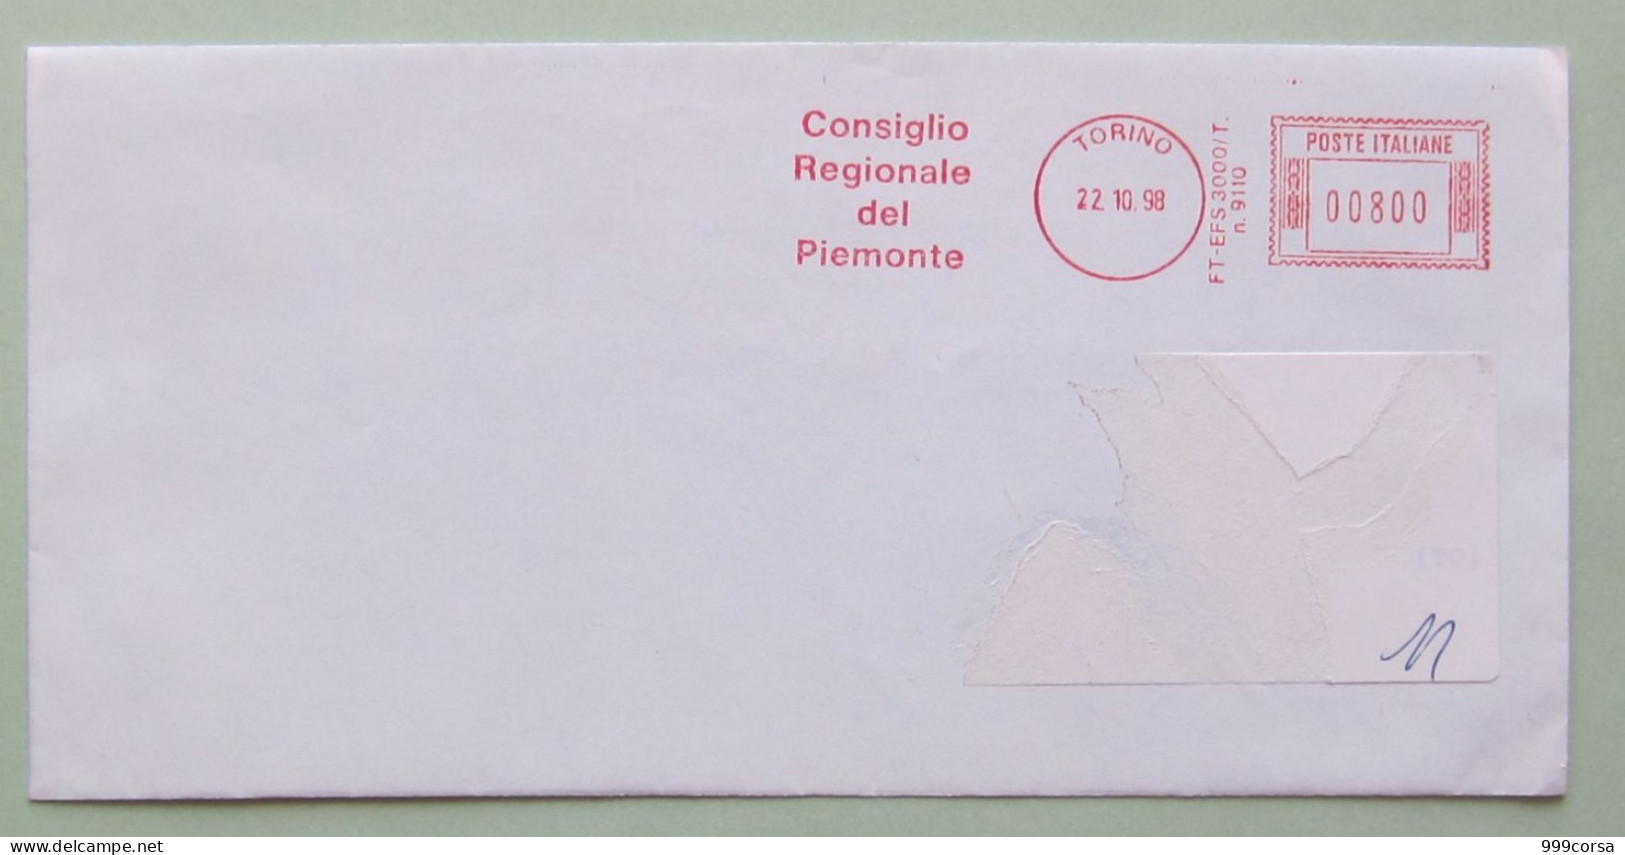 Consiglio Regionale Piemonte, 22-10-98, 800 Lire, Politica, Amministrazione, Partiti, Ema, Meter, Freistempel - Frankeermachines (EMA)